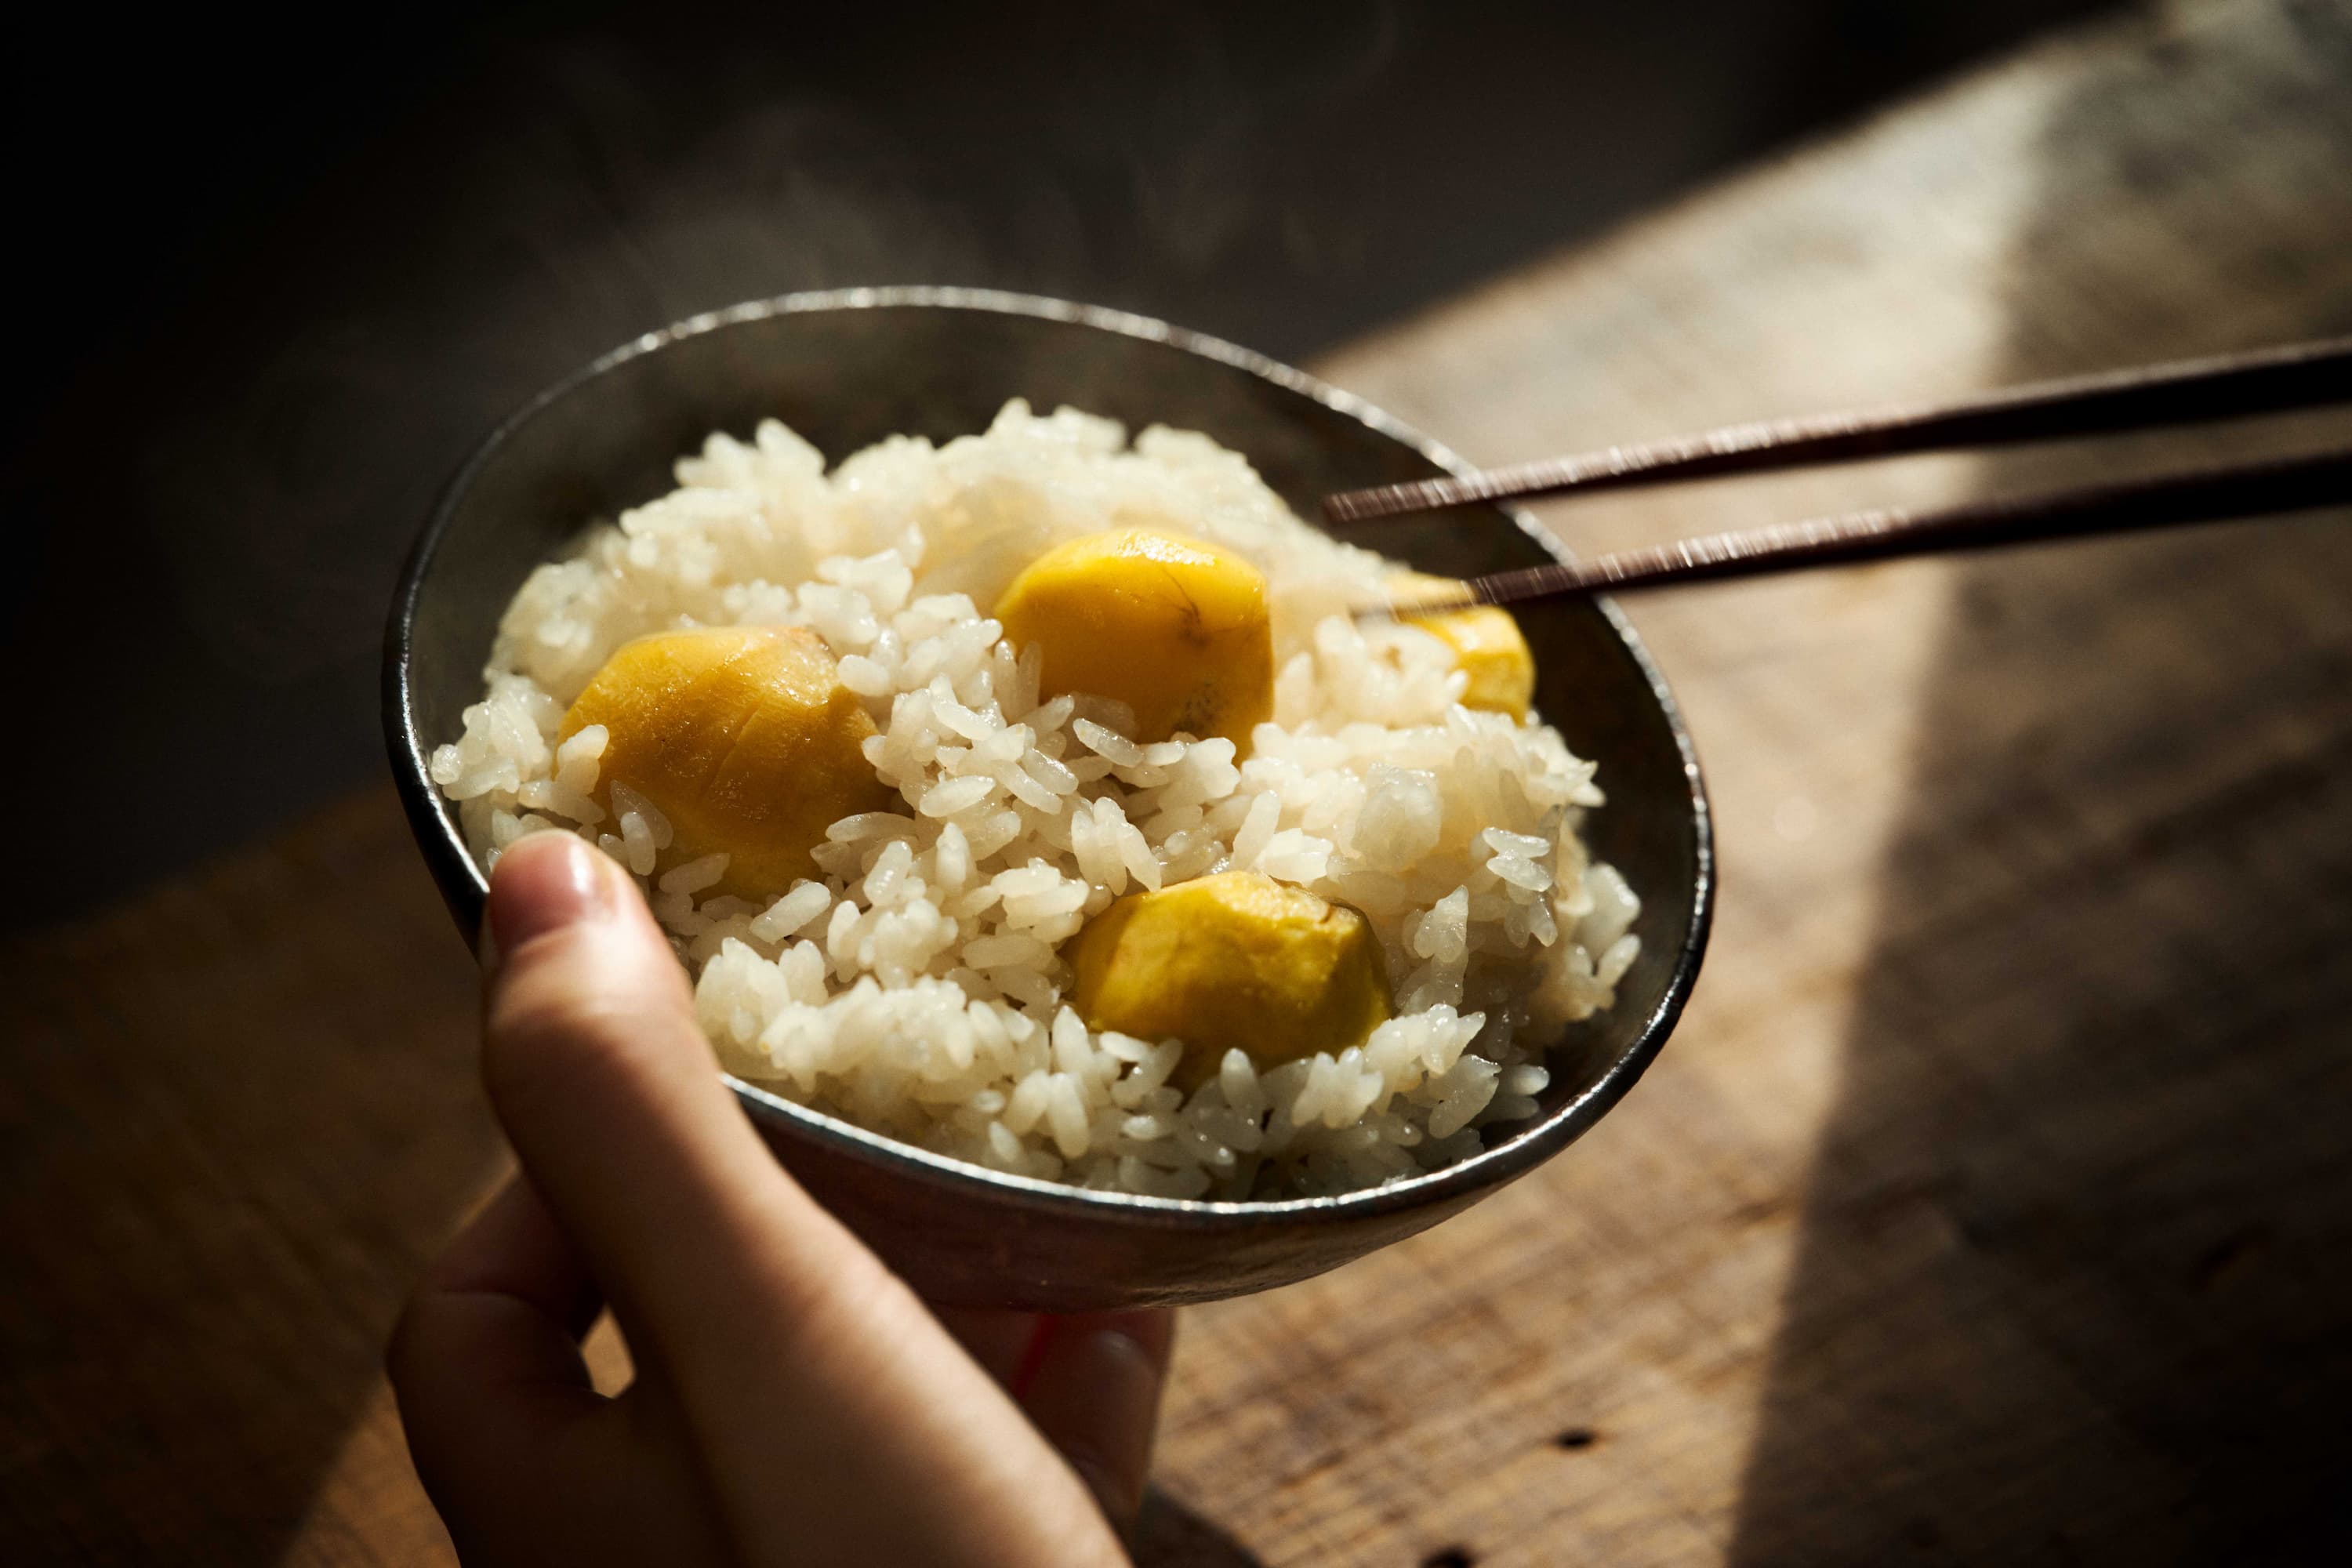 Chestnut rice photographed by Suzuki